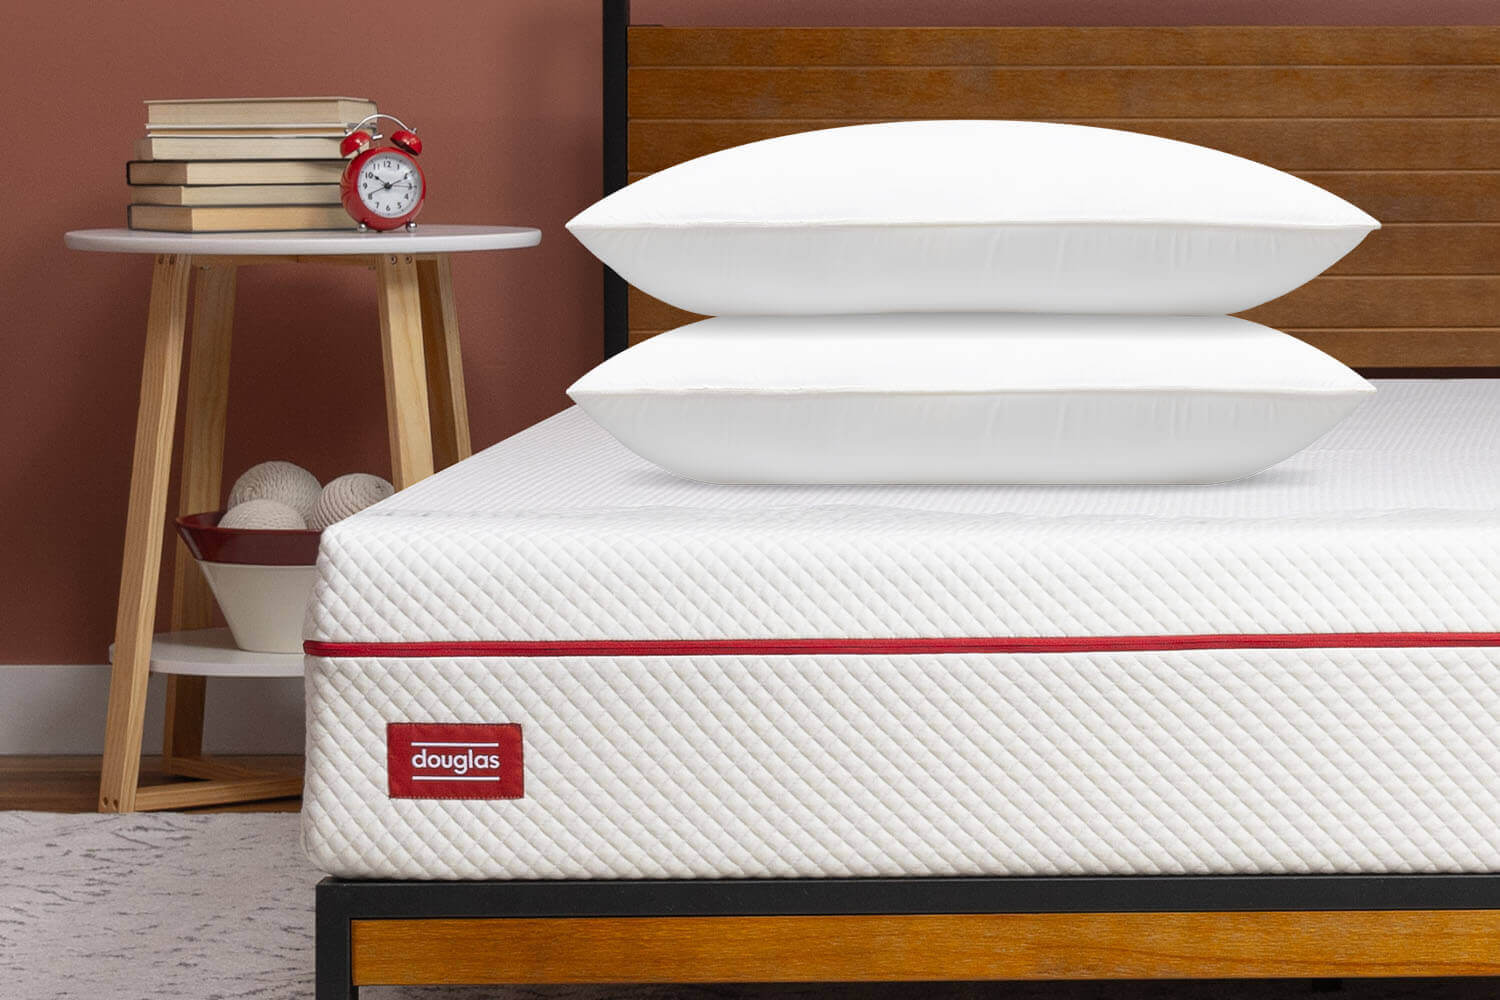 Two Memory Foam Pillows on a Douglas mattress